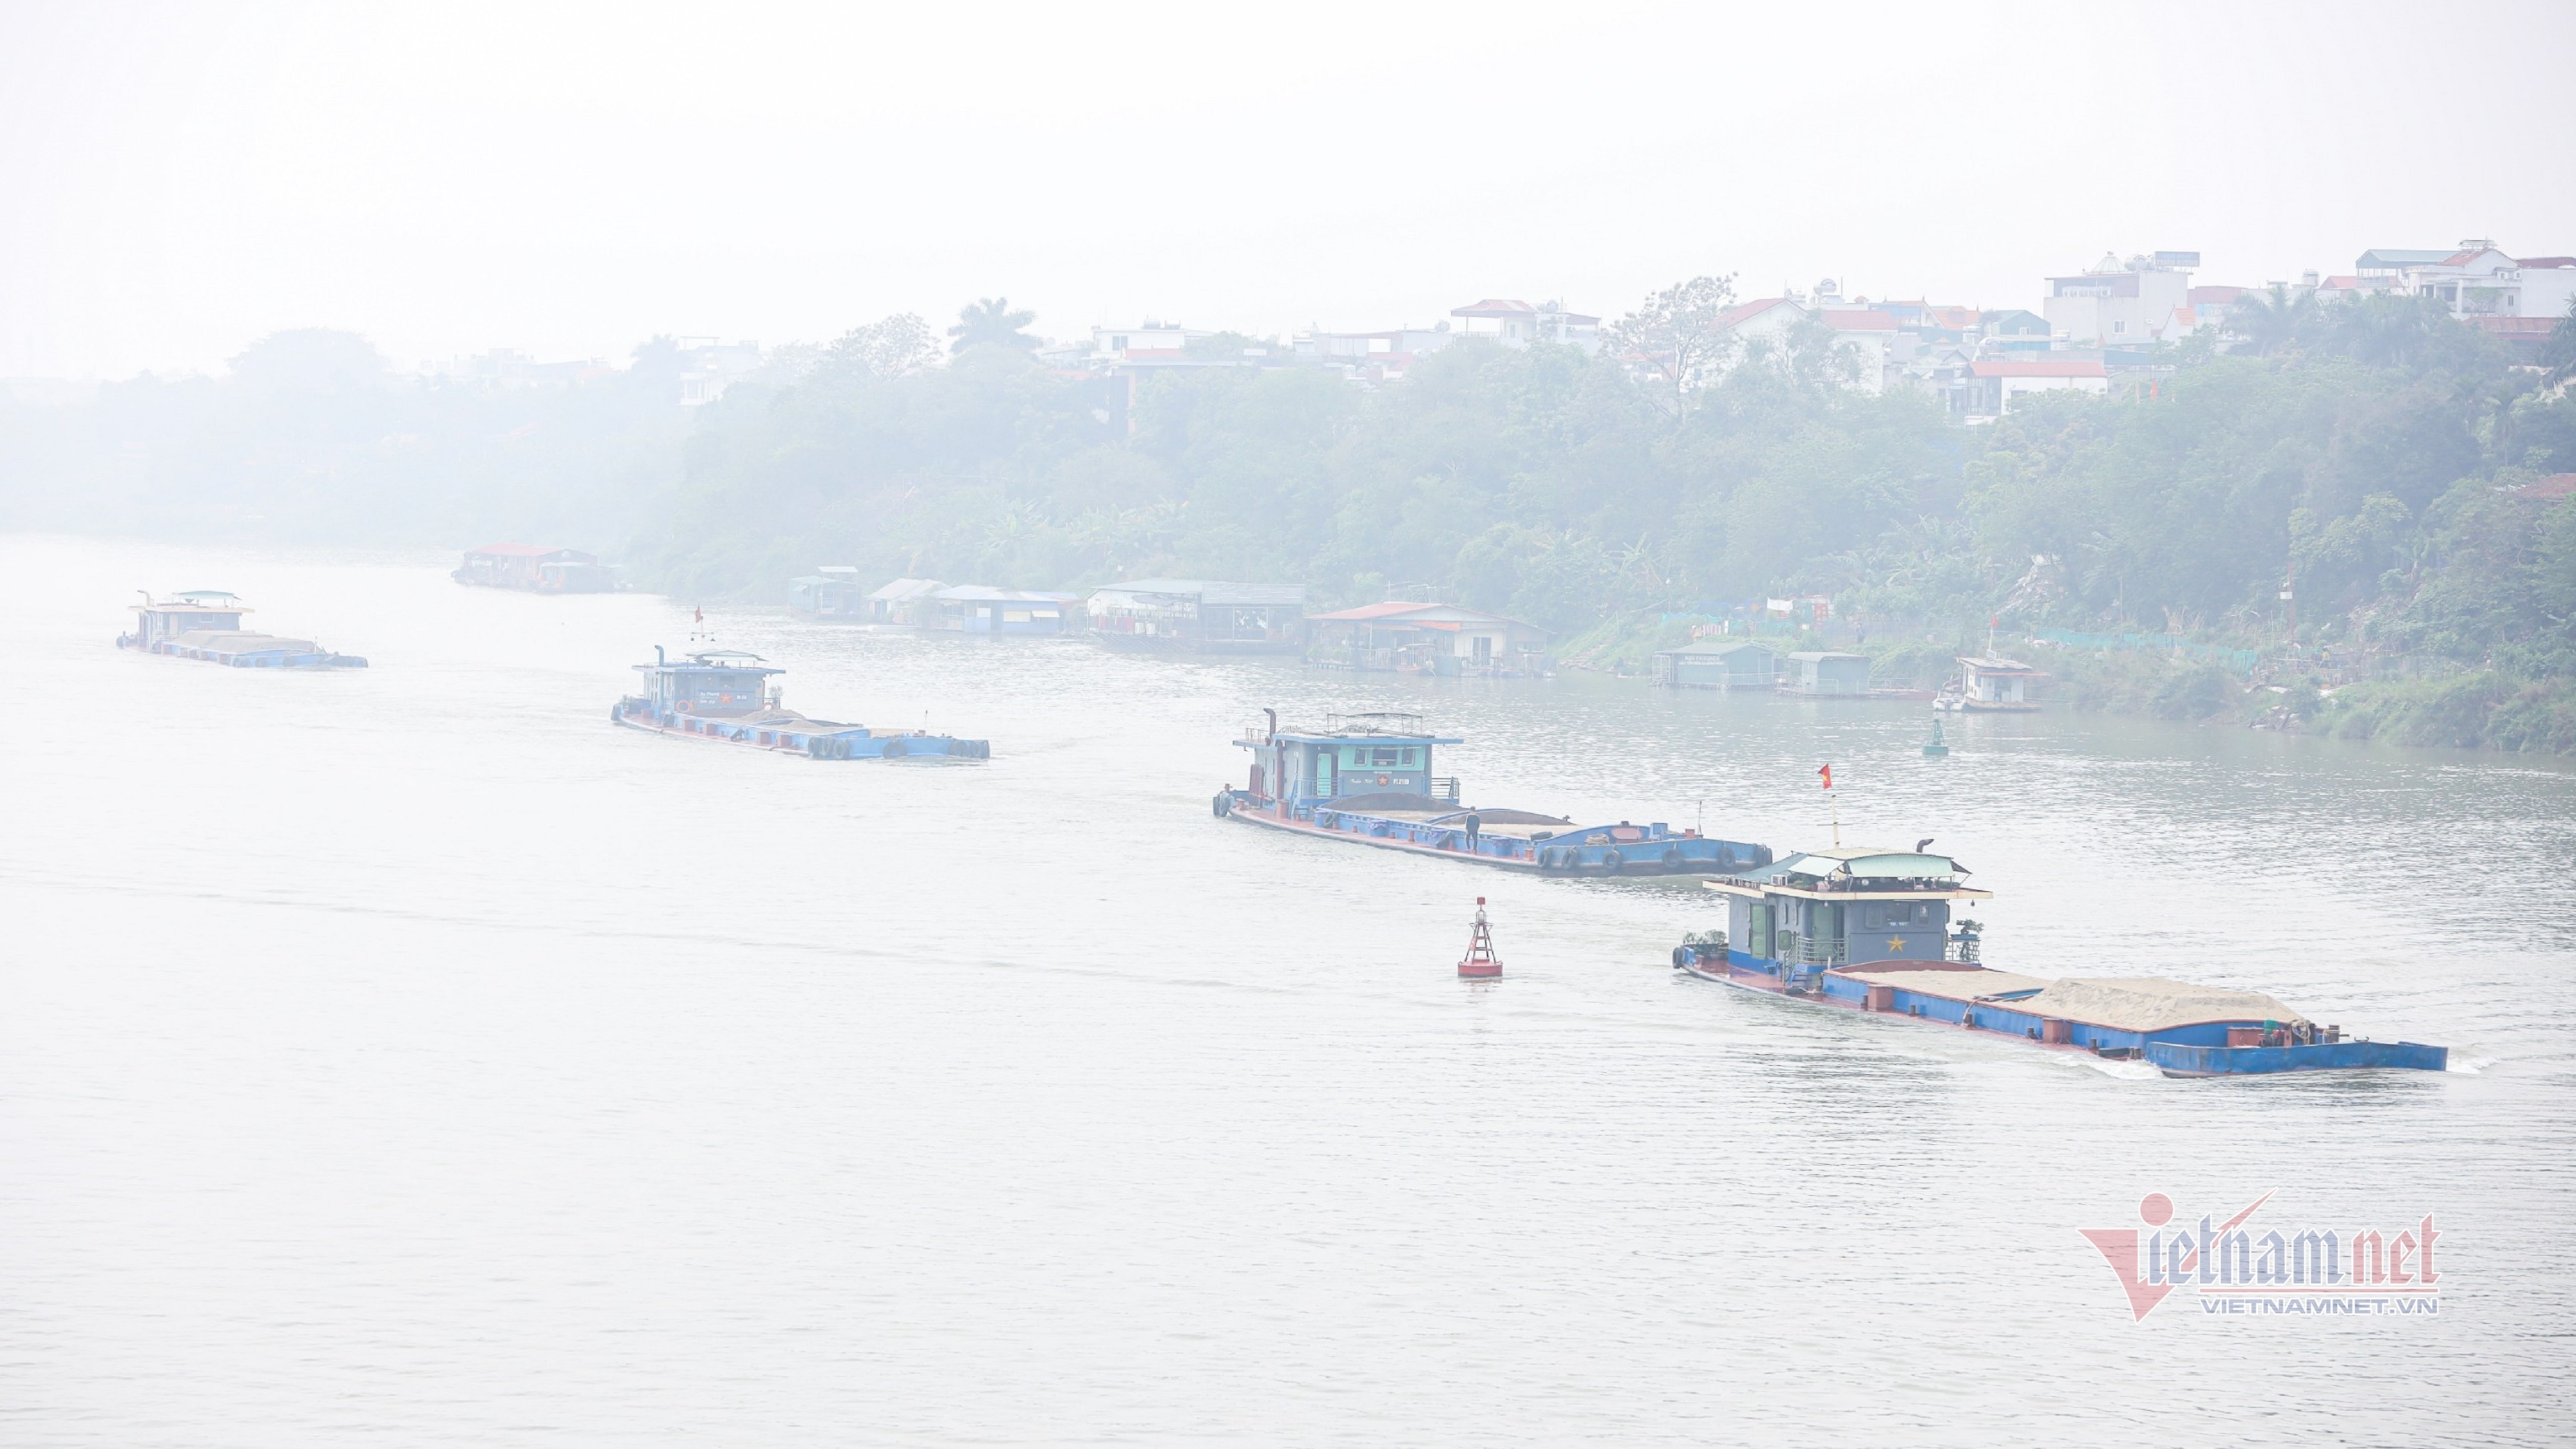 Hình ảnh búa nặng 5 tấn thả từ trên cao phá trụ hỏng của cầu Long Biên